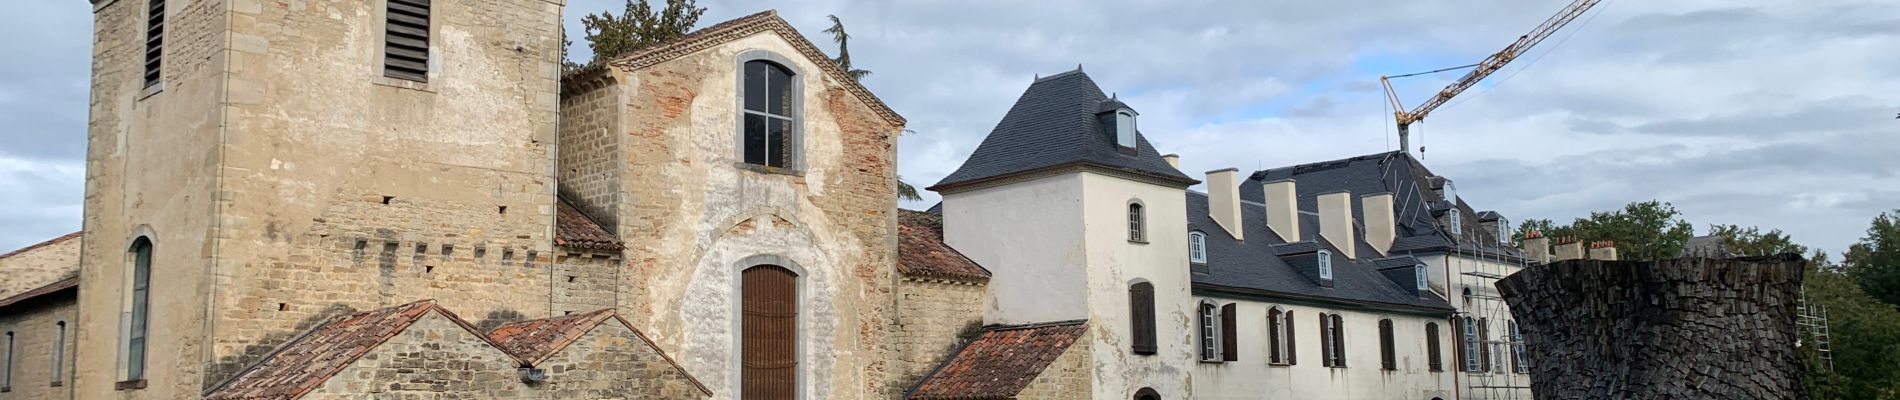 Randonnée Marche Mauvezin - 2023 09 22 CHEMIN du PIÉMONT PYRÉNÉEN - 15ème étape : St Bertrand de Comminges … 🚗 … Mauvezin - Abbaye de L’Escaladieu - Bagnères de Bigorre. - Photo